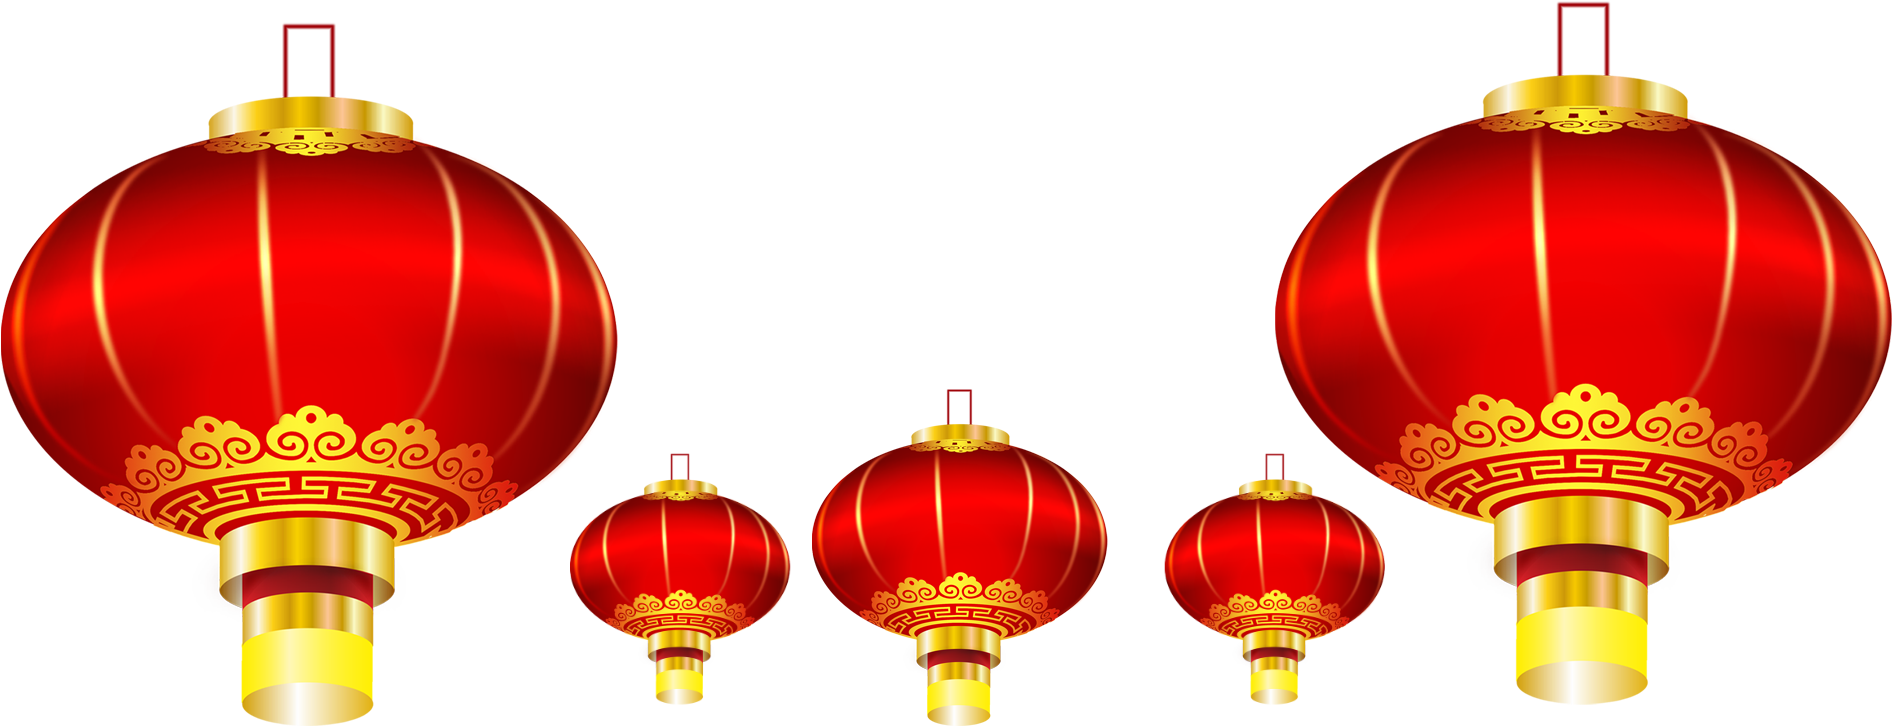 Lantern Chinese New Year U5927u7d05u71c8u7c60 - Lantern Festival (2600x2000)